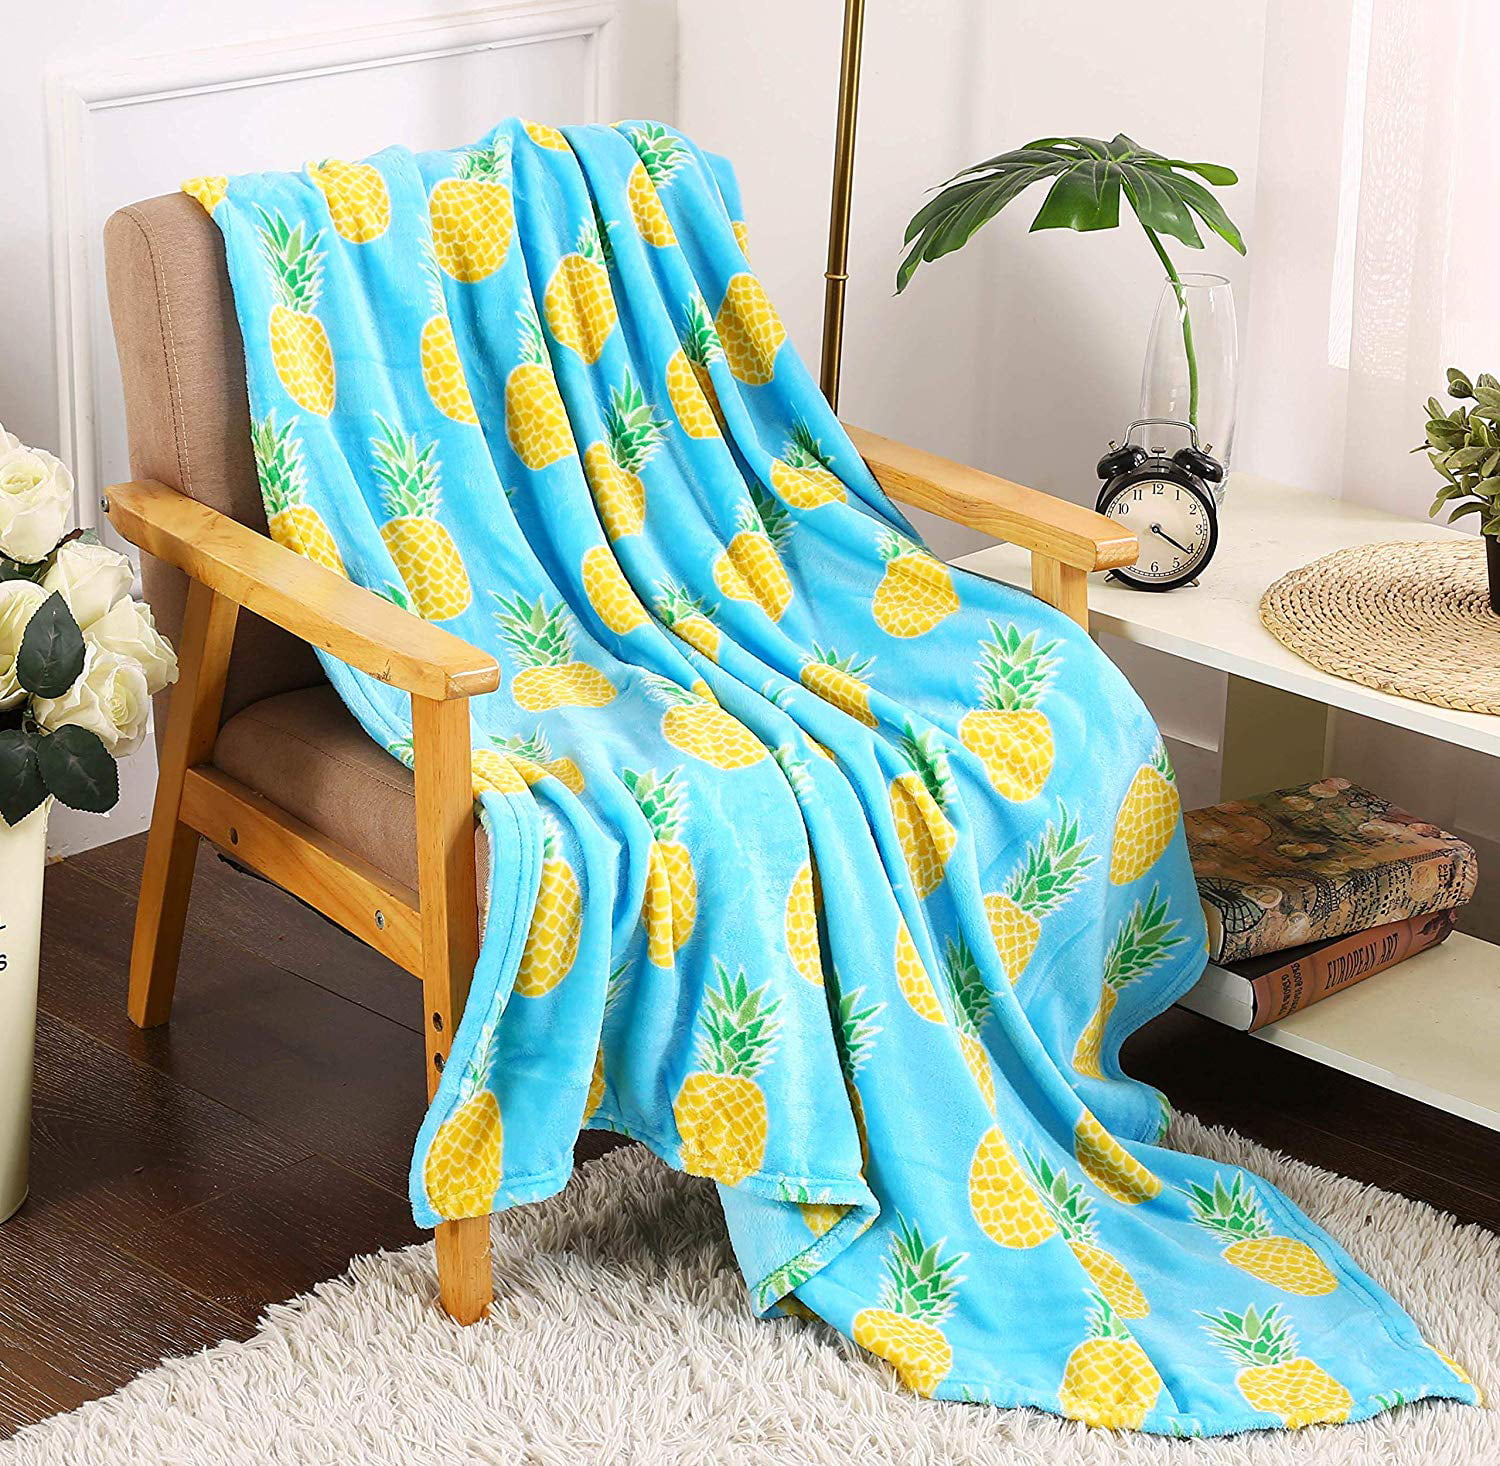 Ultra Soft Micro Fleece Blanket Golden Pineapple Summer Throw Ultra Soft Lightweight Bed Fleece Home Sofa Decoration